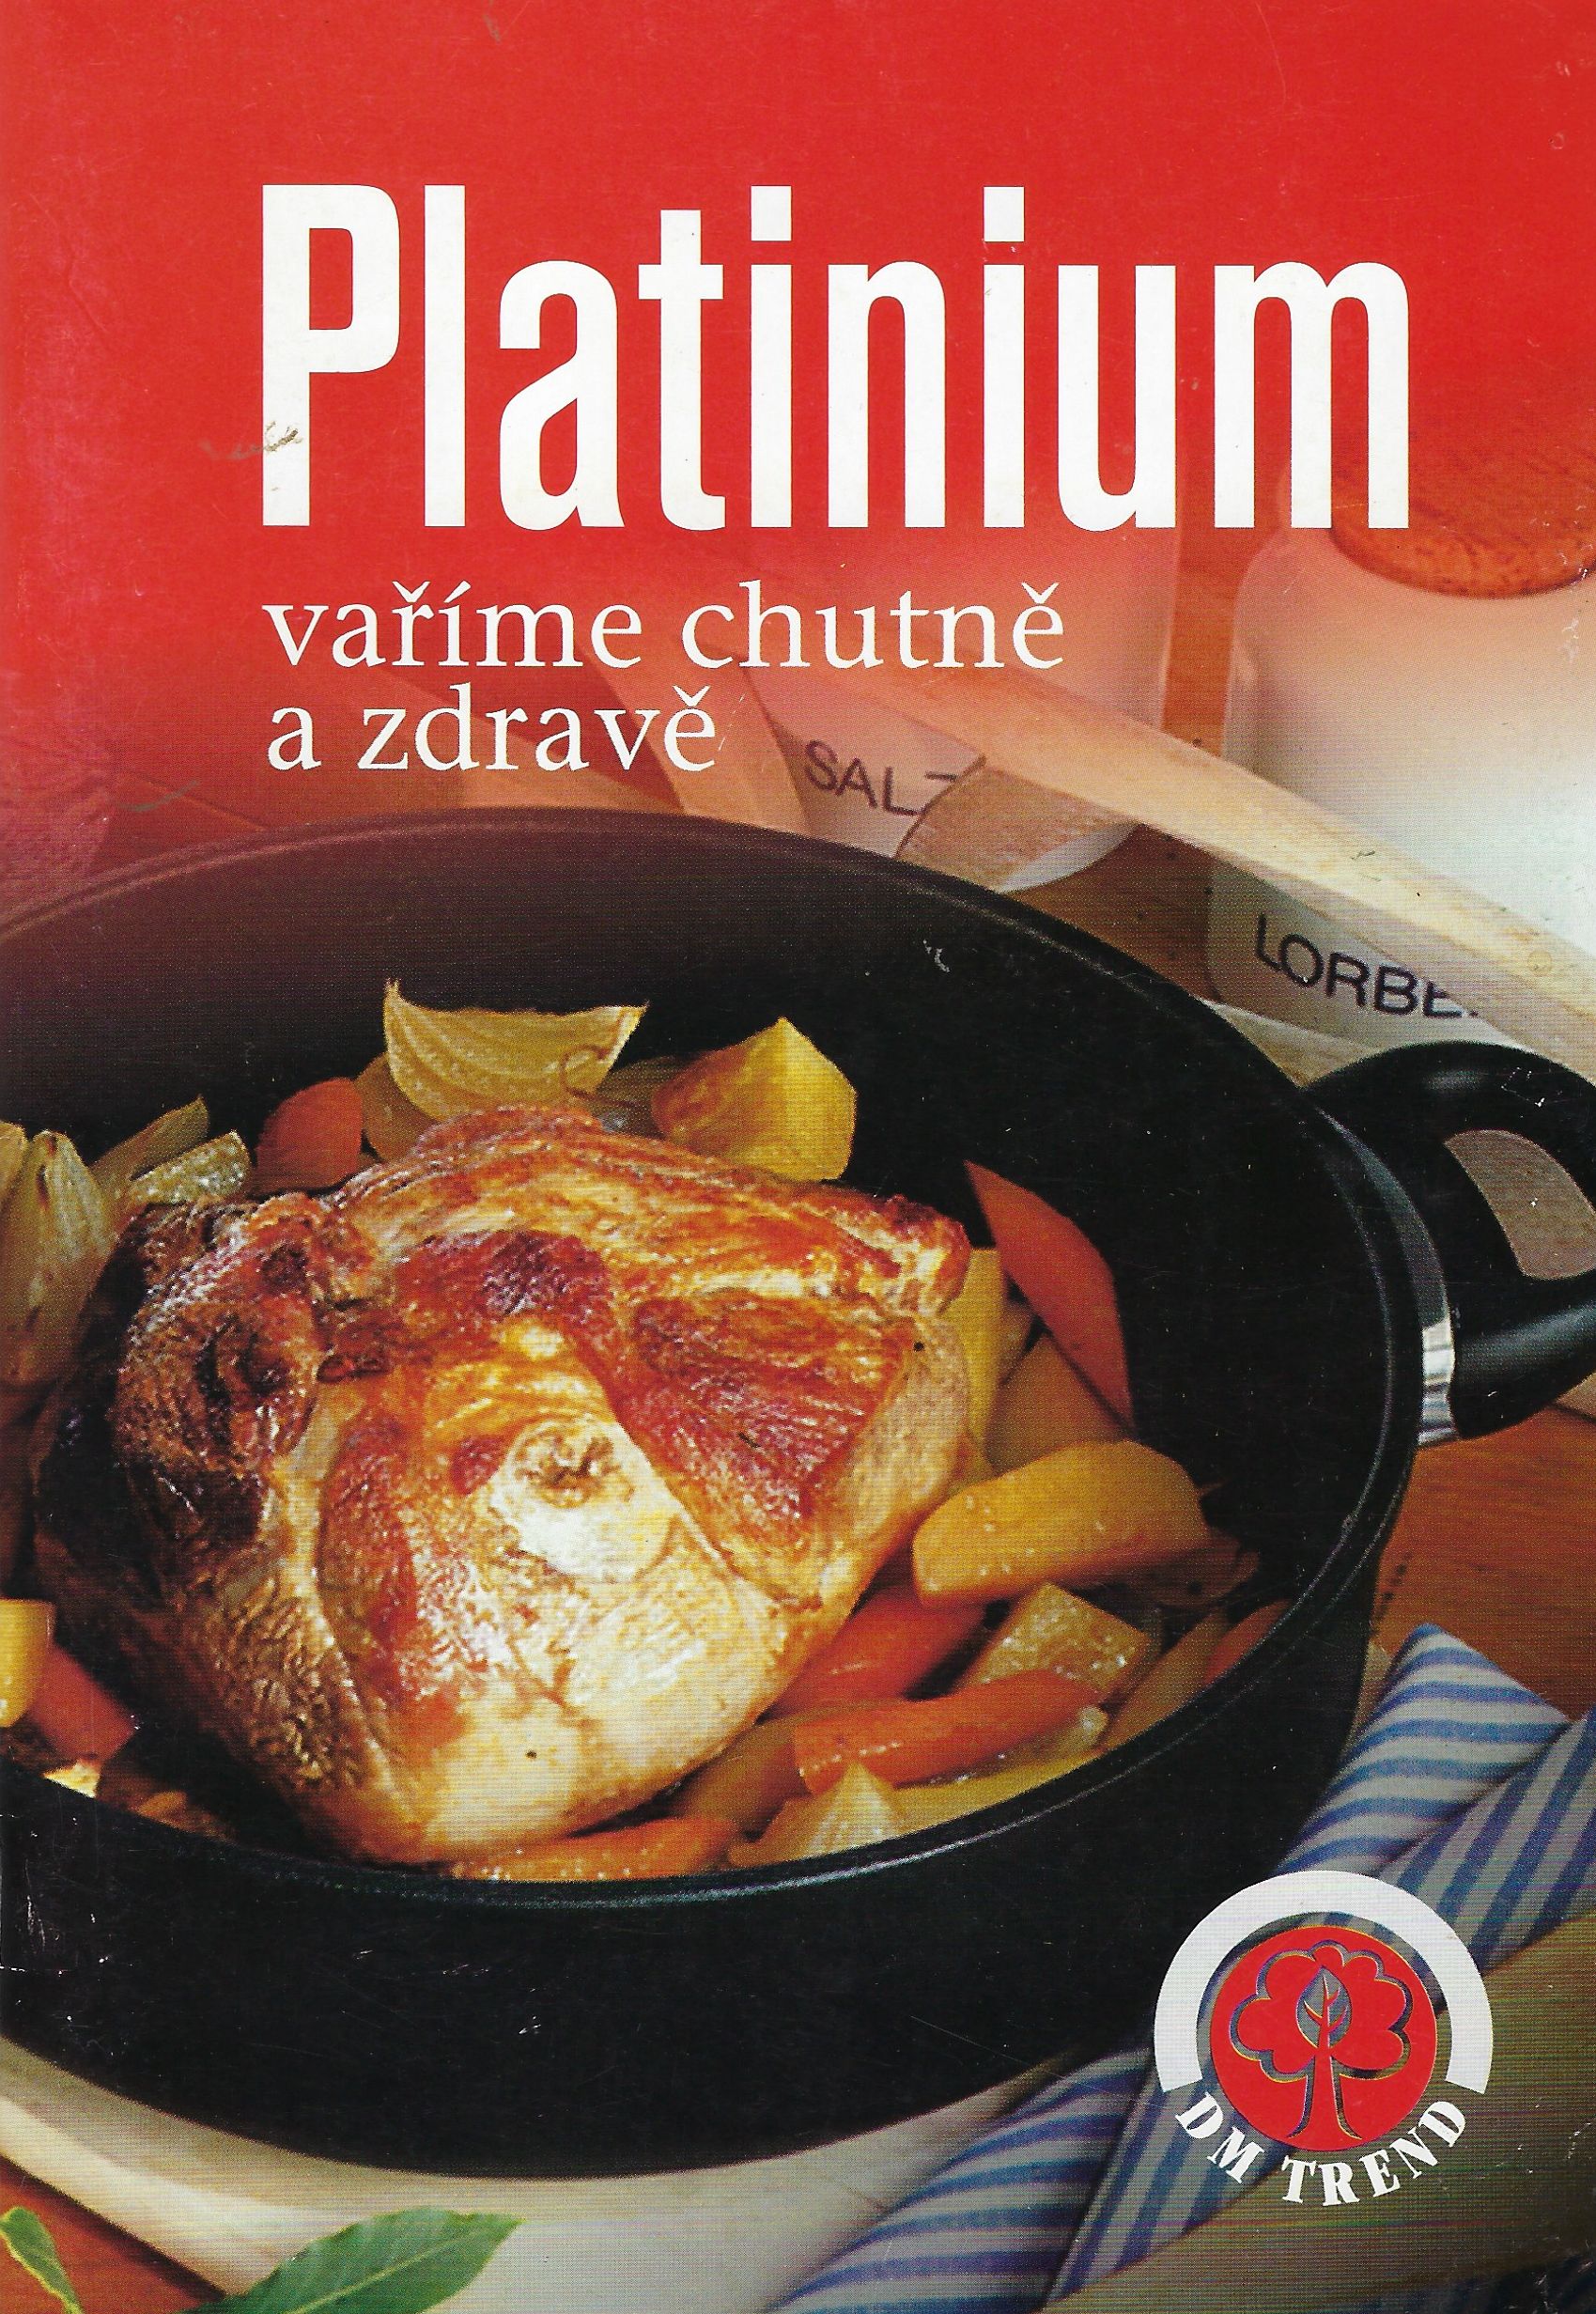 Platinium vaříme chutně a zdravě